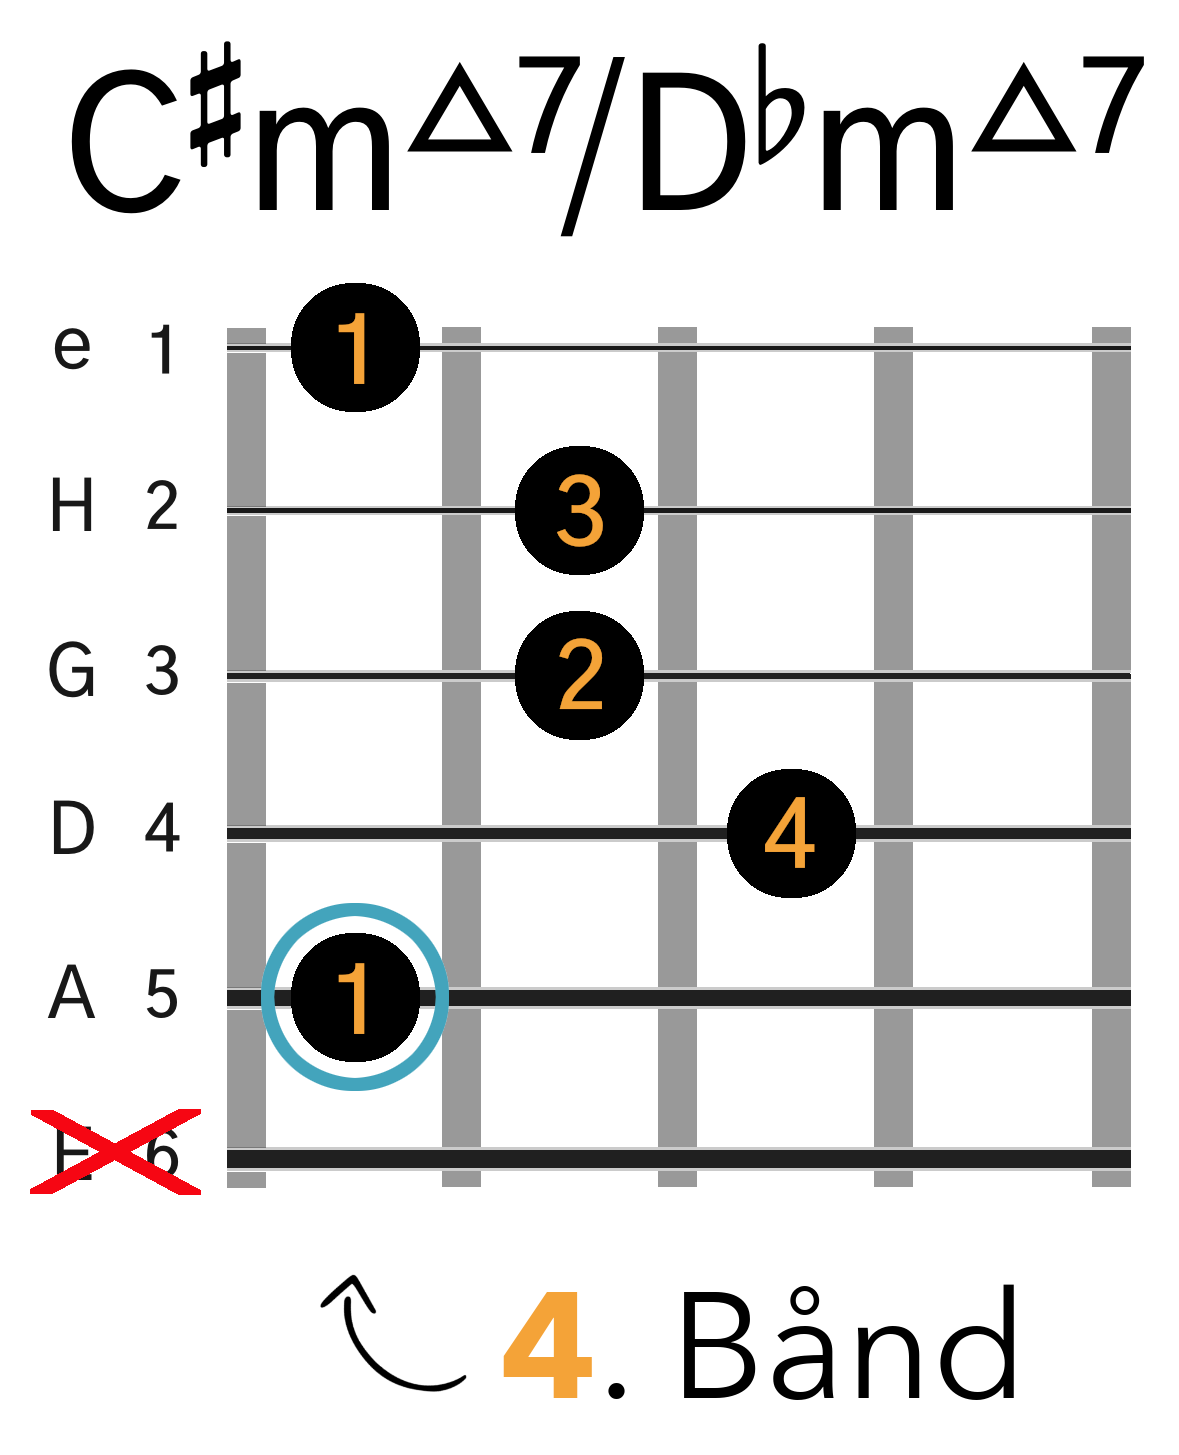 Grafik af hvordan man tager en C#m(maj7) / Dbm(maj7) barré akkord (A-form) på guitar